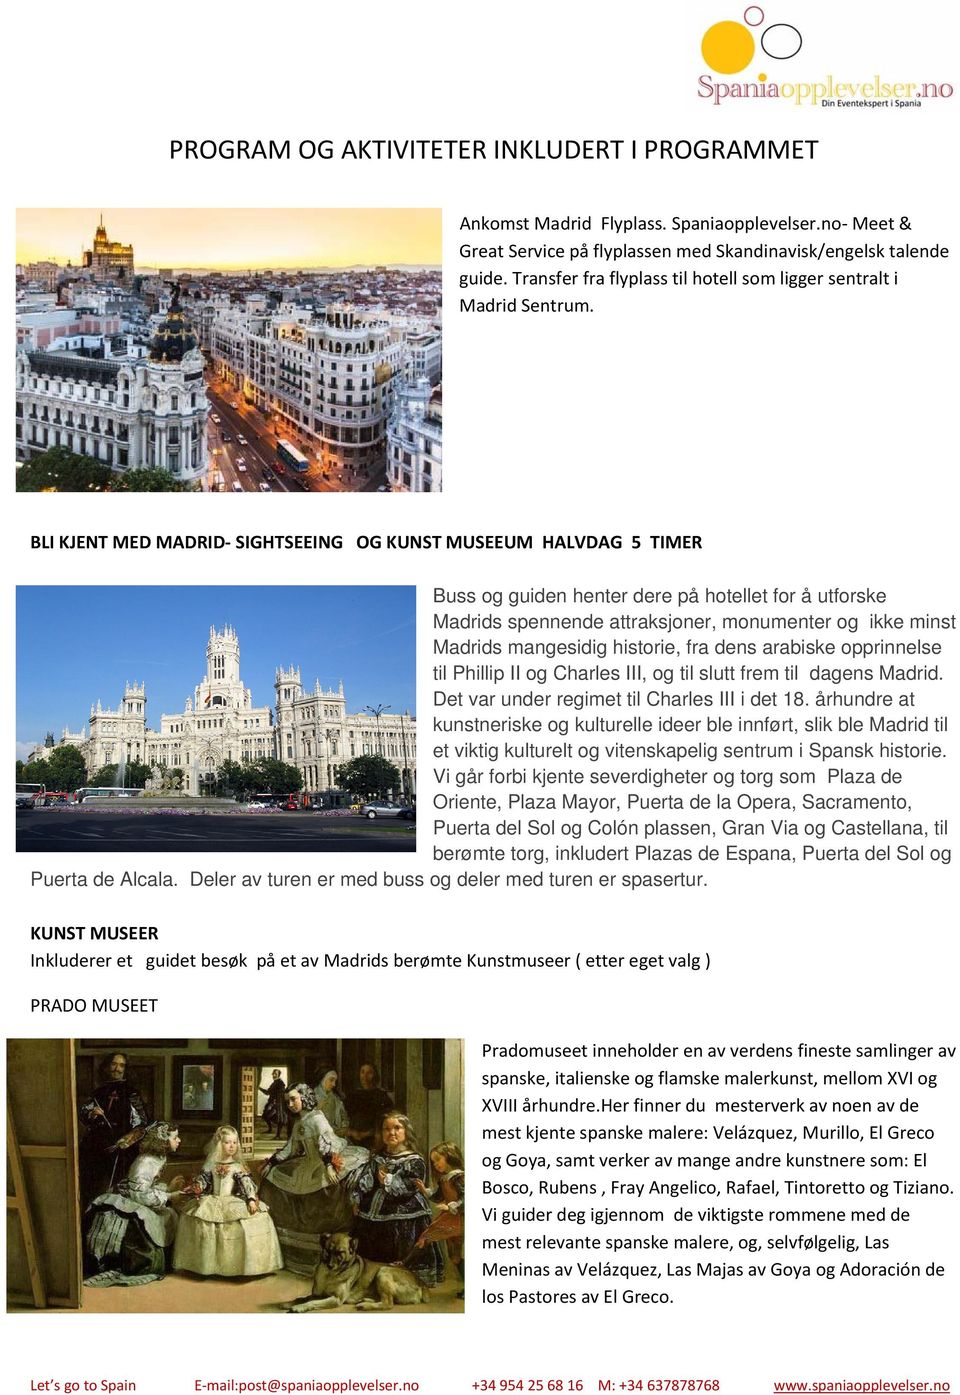 BLI KJENT MED MADRID SIGHTSEEING OG KUNST MUSEEUM HALVDAG 5 TIMER Buss og guiden henter dere på hotellet for å utforske Madrids spennende attraksjoner, monumenter og ikke minst Madrids mangesidig